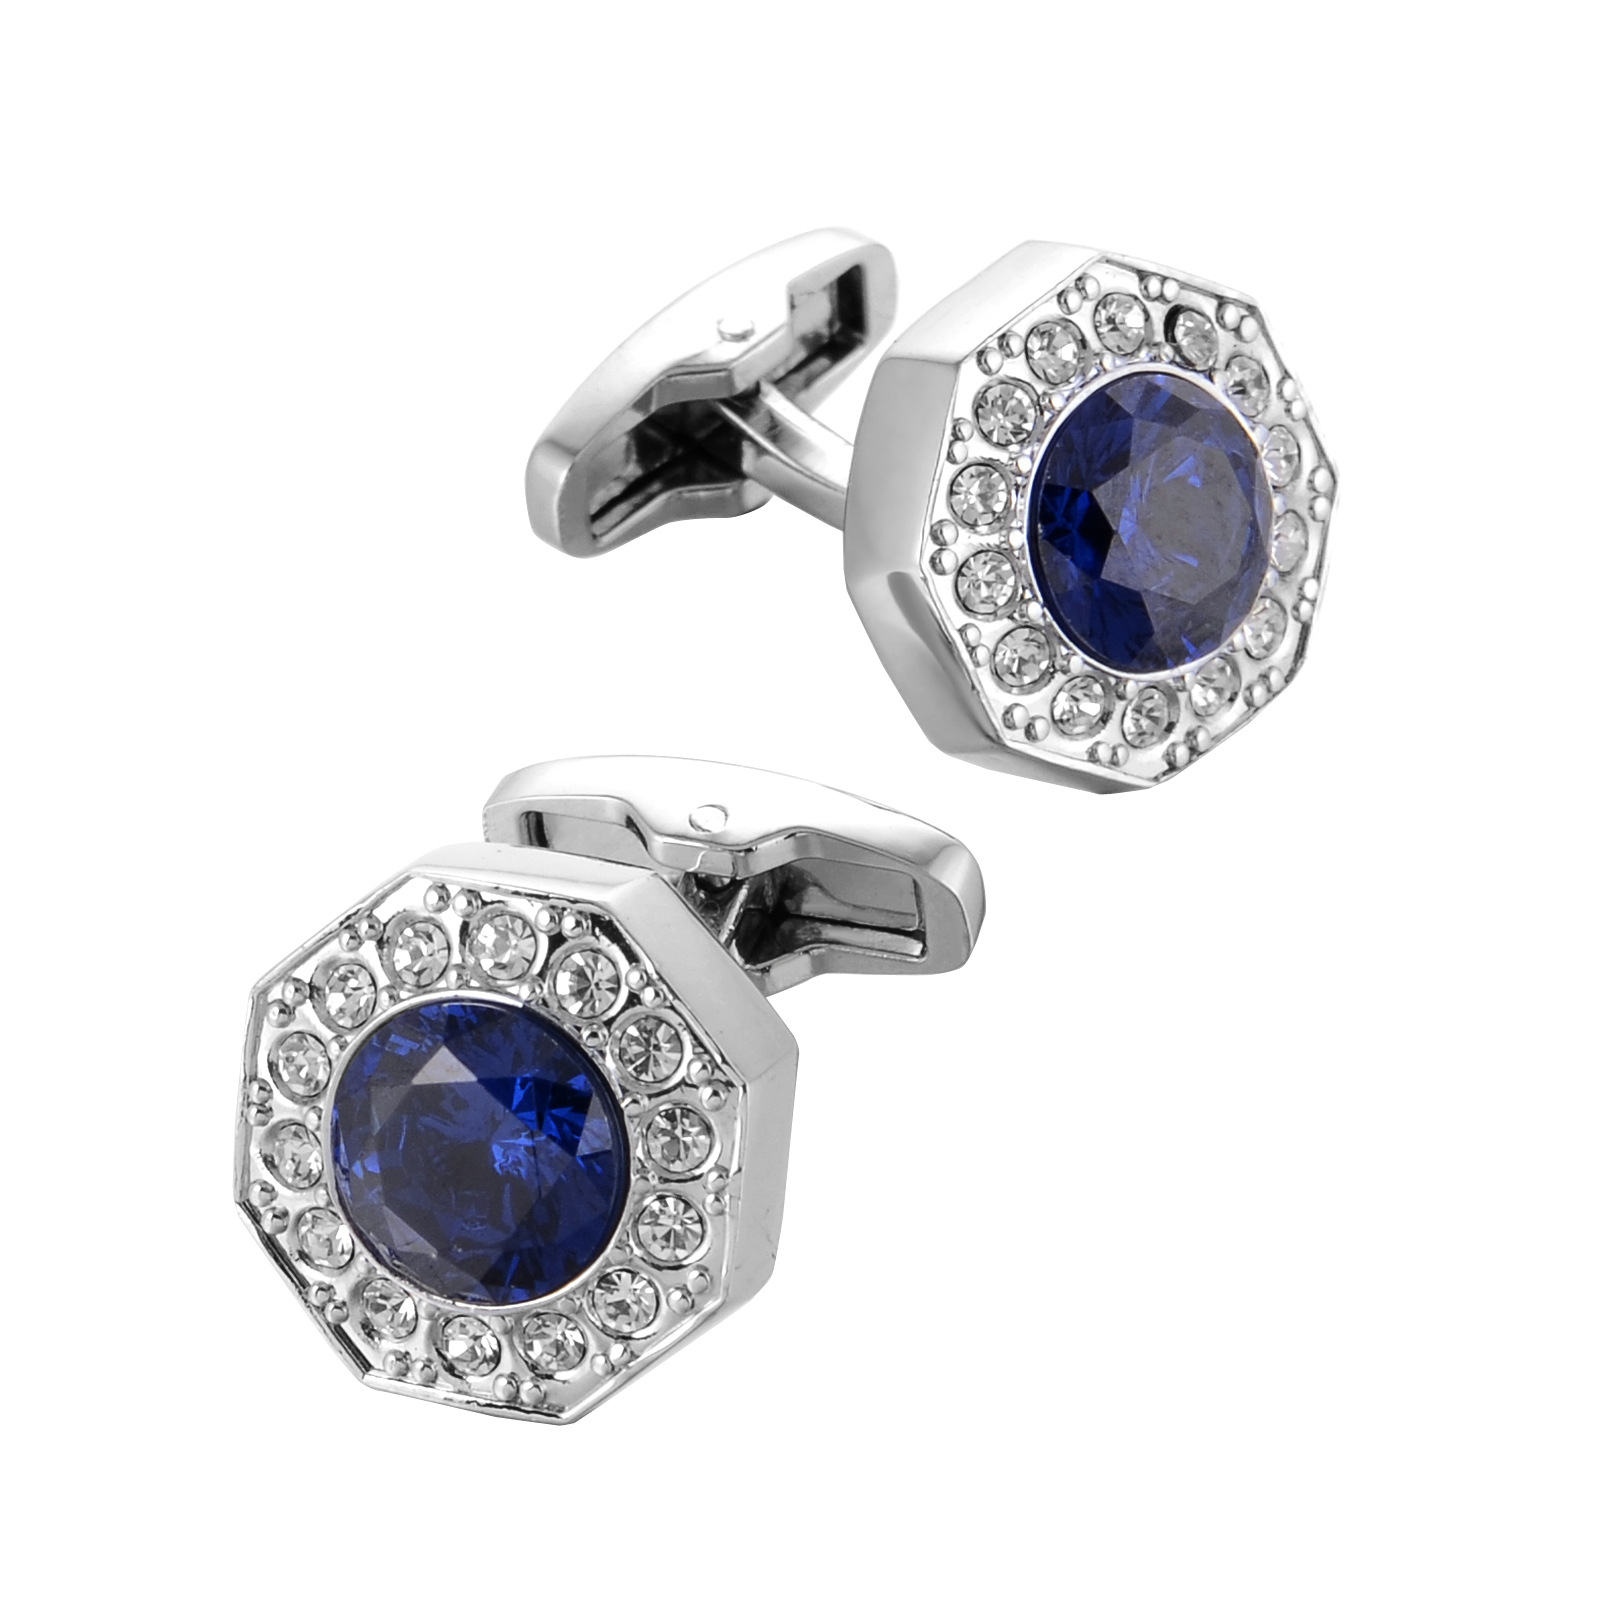 Yuvarlak Klasik Kol Düğmesi Damat Kol Düğmeleri Erkek Yüksek Kalite Gömlek Düğmeleri Mavi Taş Kol Düğmeleri Düğün Hediyesi Takı